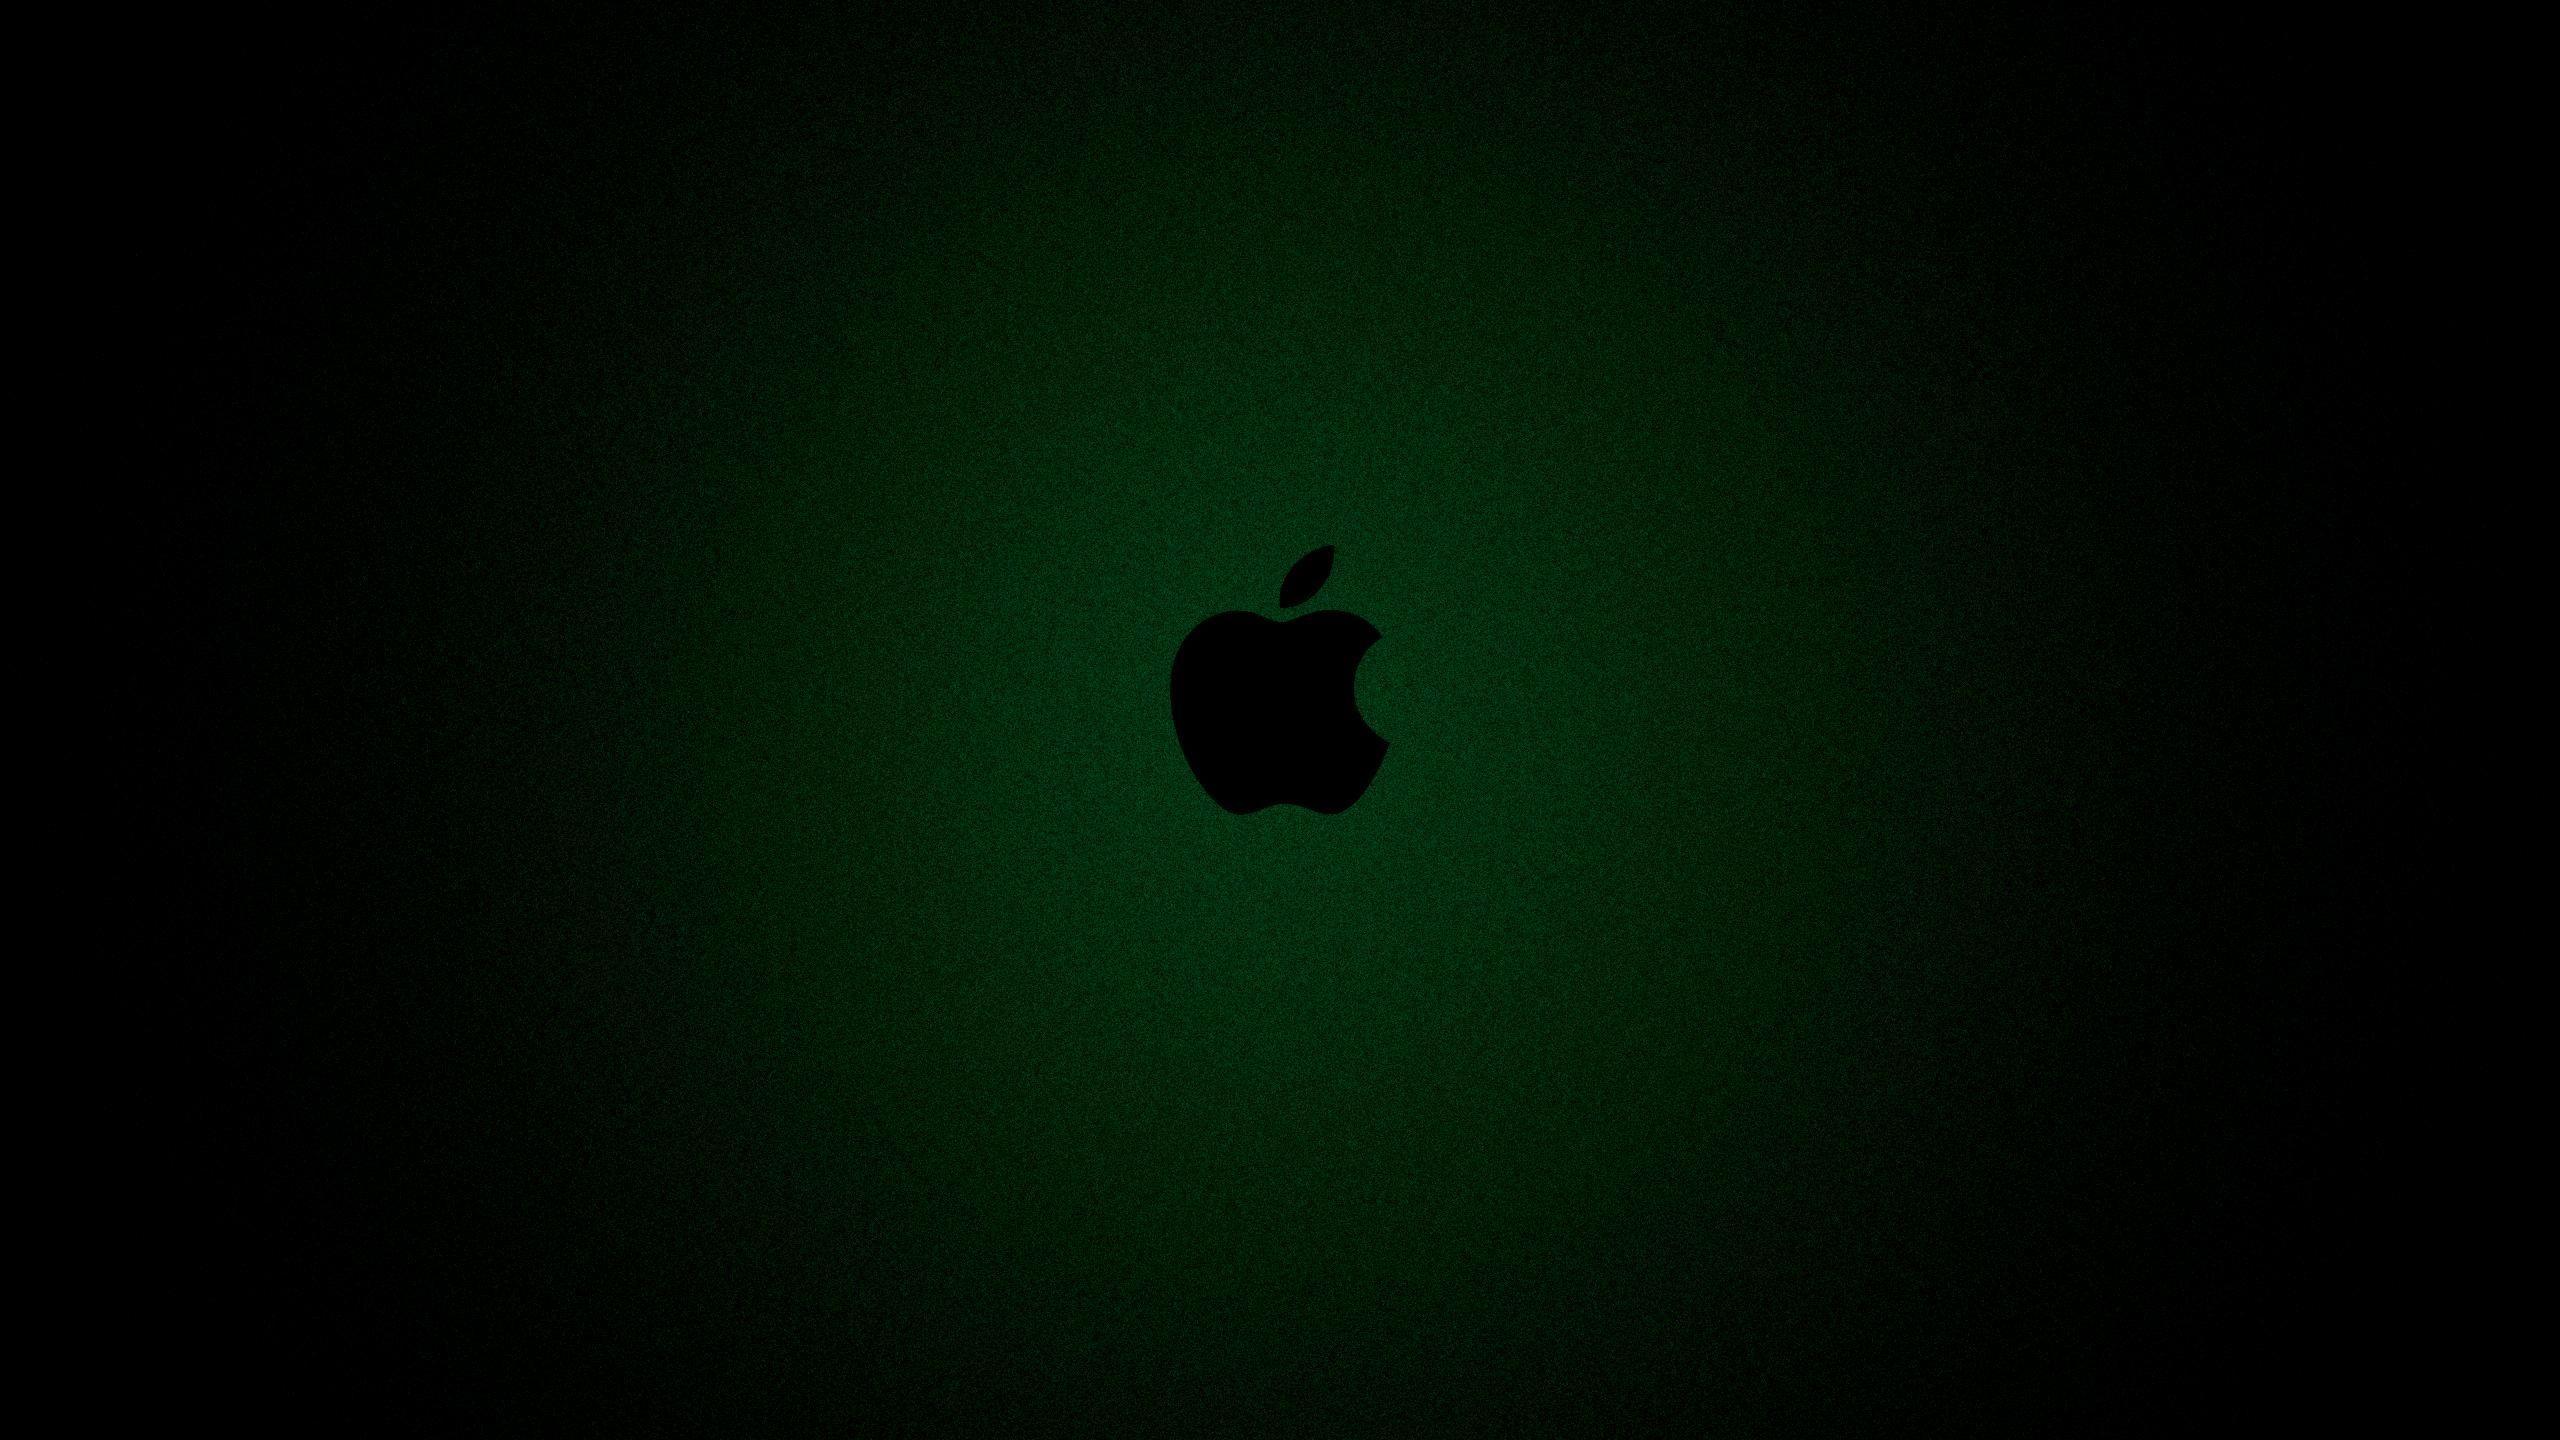 Dark Green Apple Wallpapers - Top Free Dark Green Apple Backgrounds ...